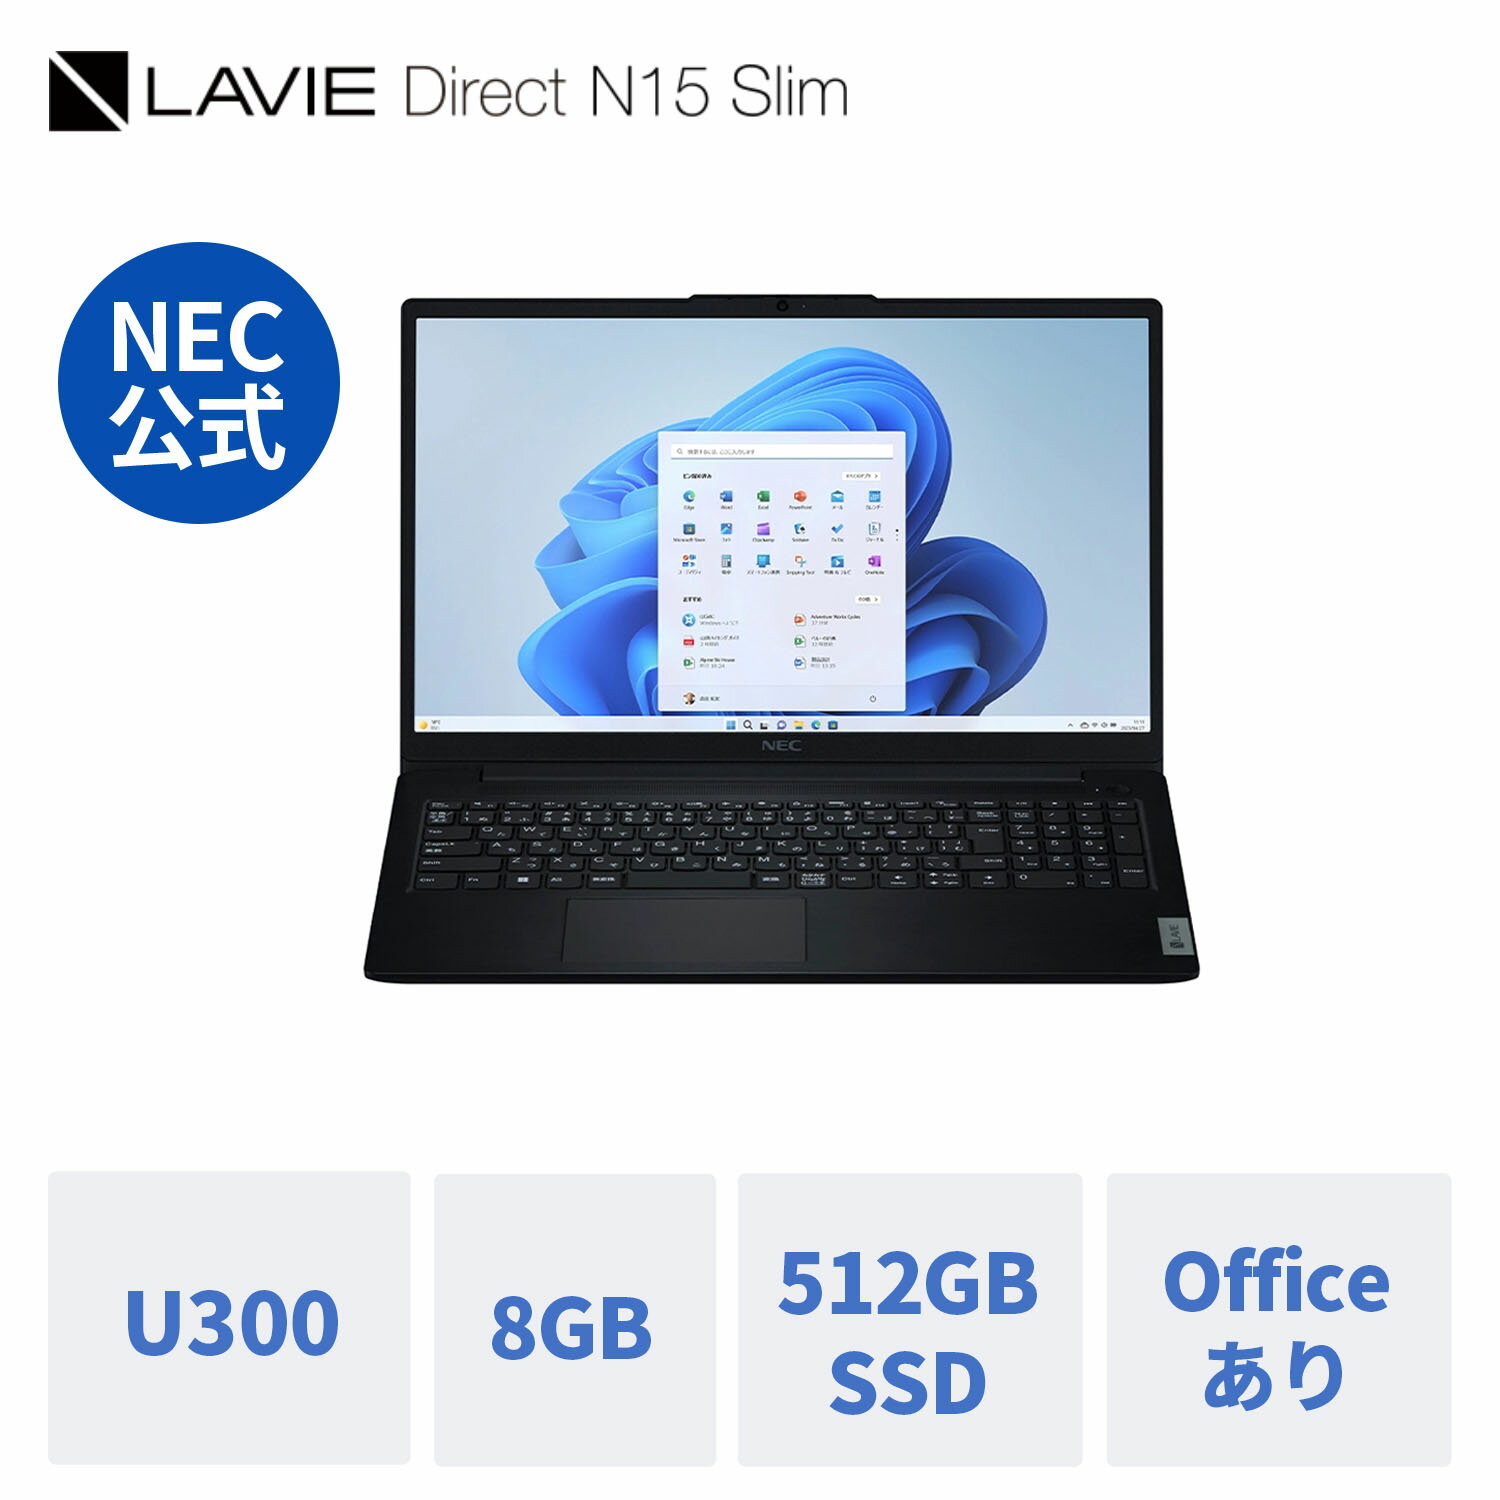 【セール1.5万OFF 最大P37倍】【公式】 新品 NEC ノートパソコン office付き LAVIE Direct N15 Slim 15.6インチ Windows 11 Home Intel Processor U300 メモリ 8GB 512GB SSD 1年保証 送料無料 【Norton2】 yxe